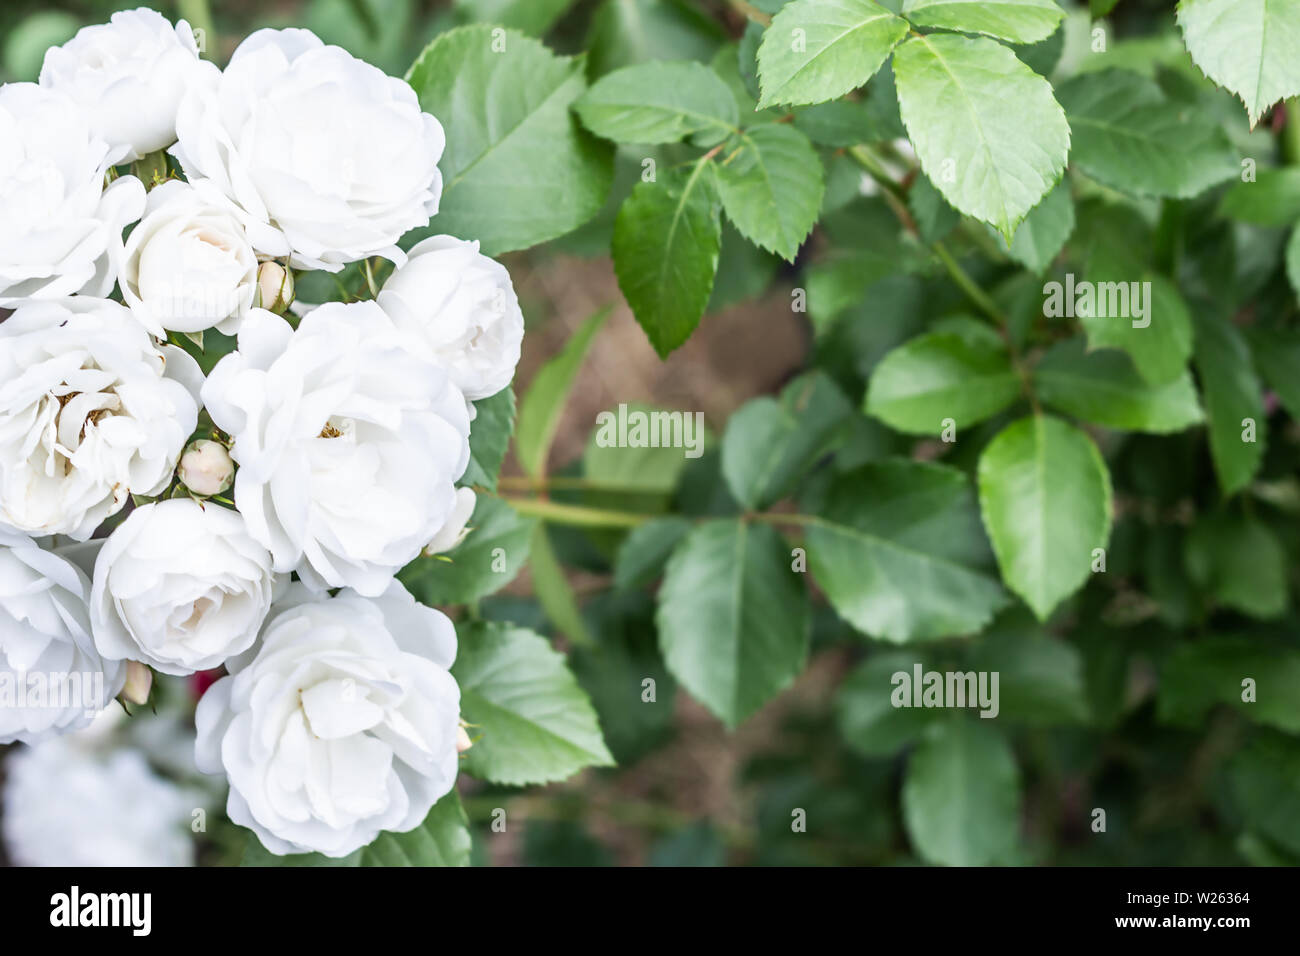 Weiße Aspirin Rose auf natürlichem grünen Laub Hintergrund mit Kopie Raum. Stockfoto